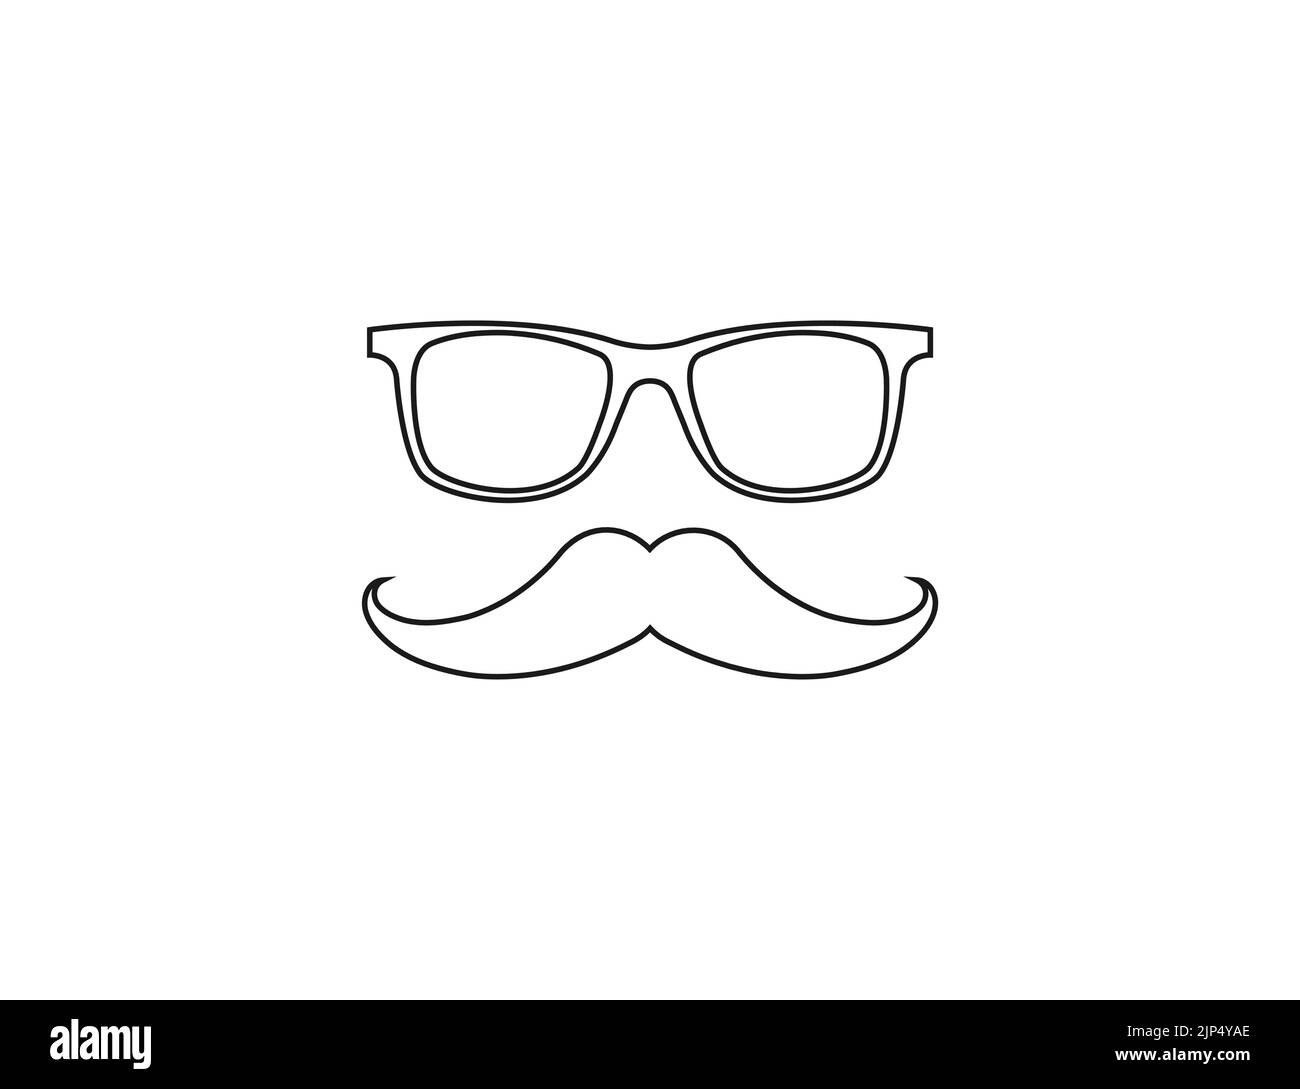 Mustache, glasses icon. Vector illustration. Stock Vector